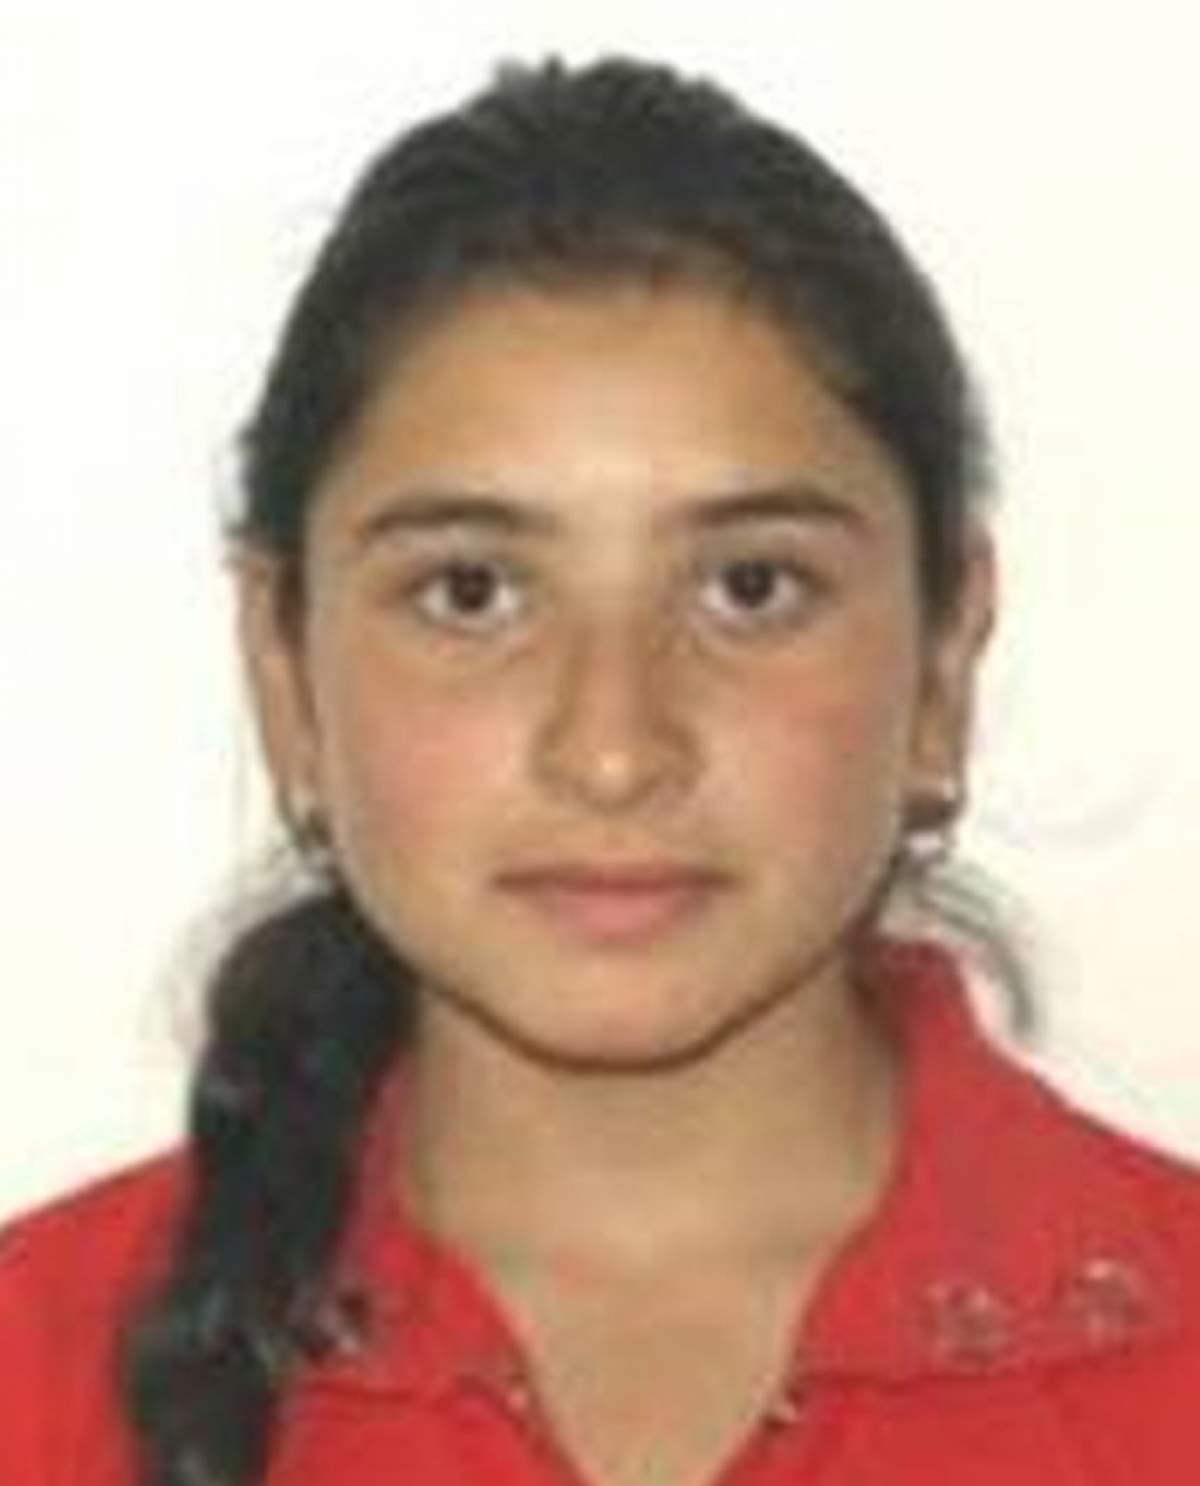 Fata de 16 ani din Timiș, dispărută de acasă, a fost găsită